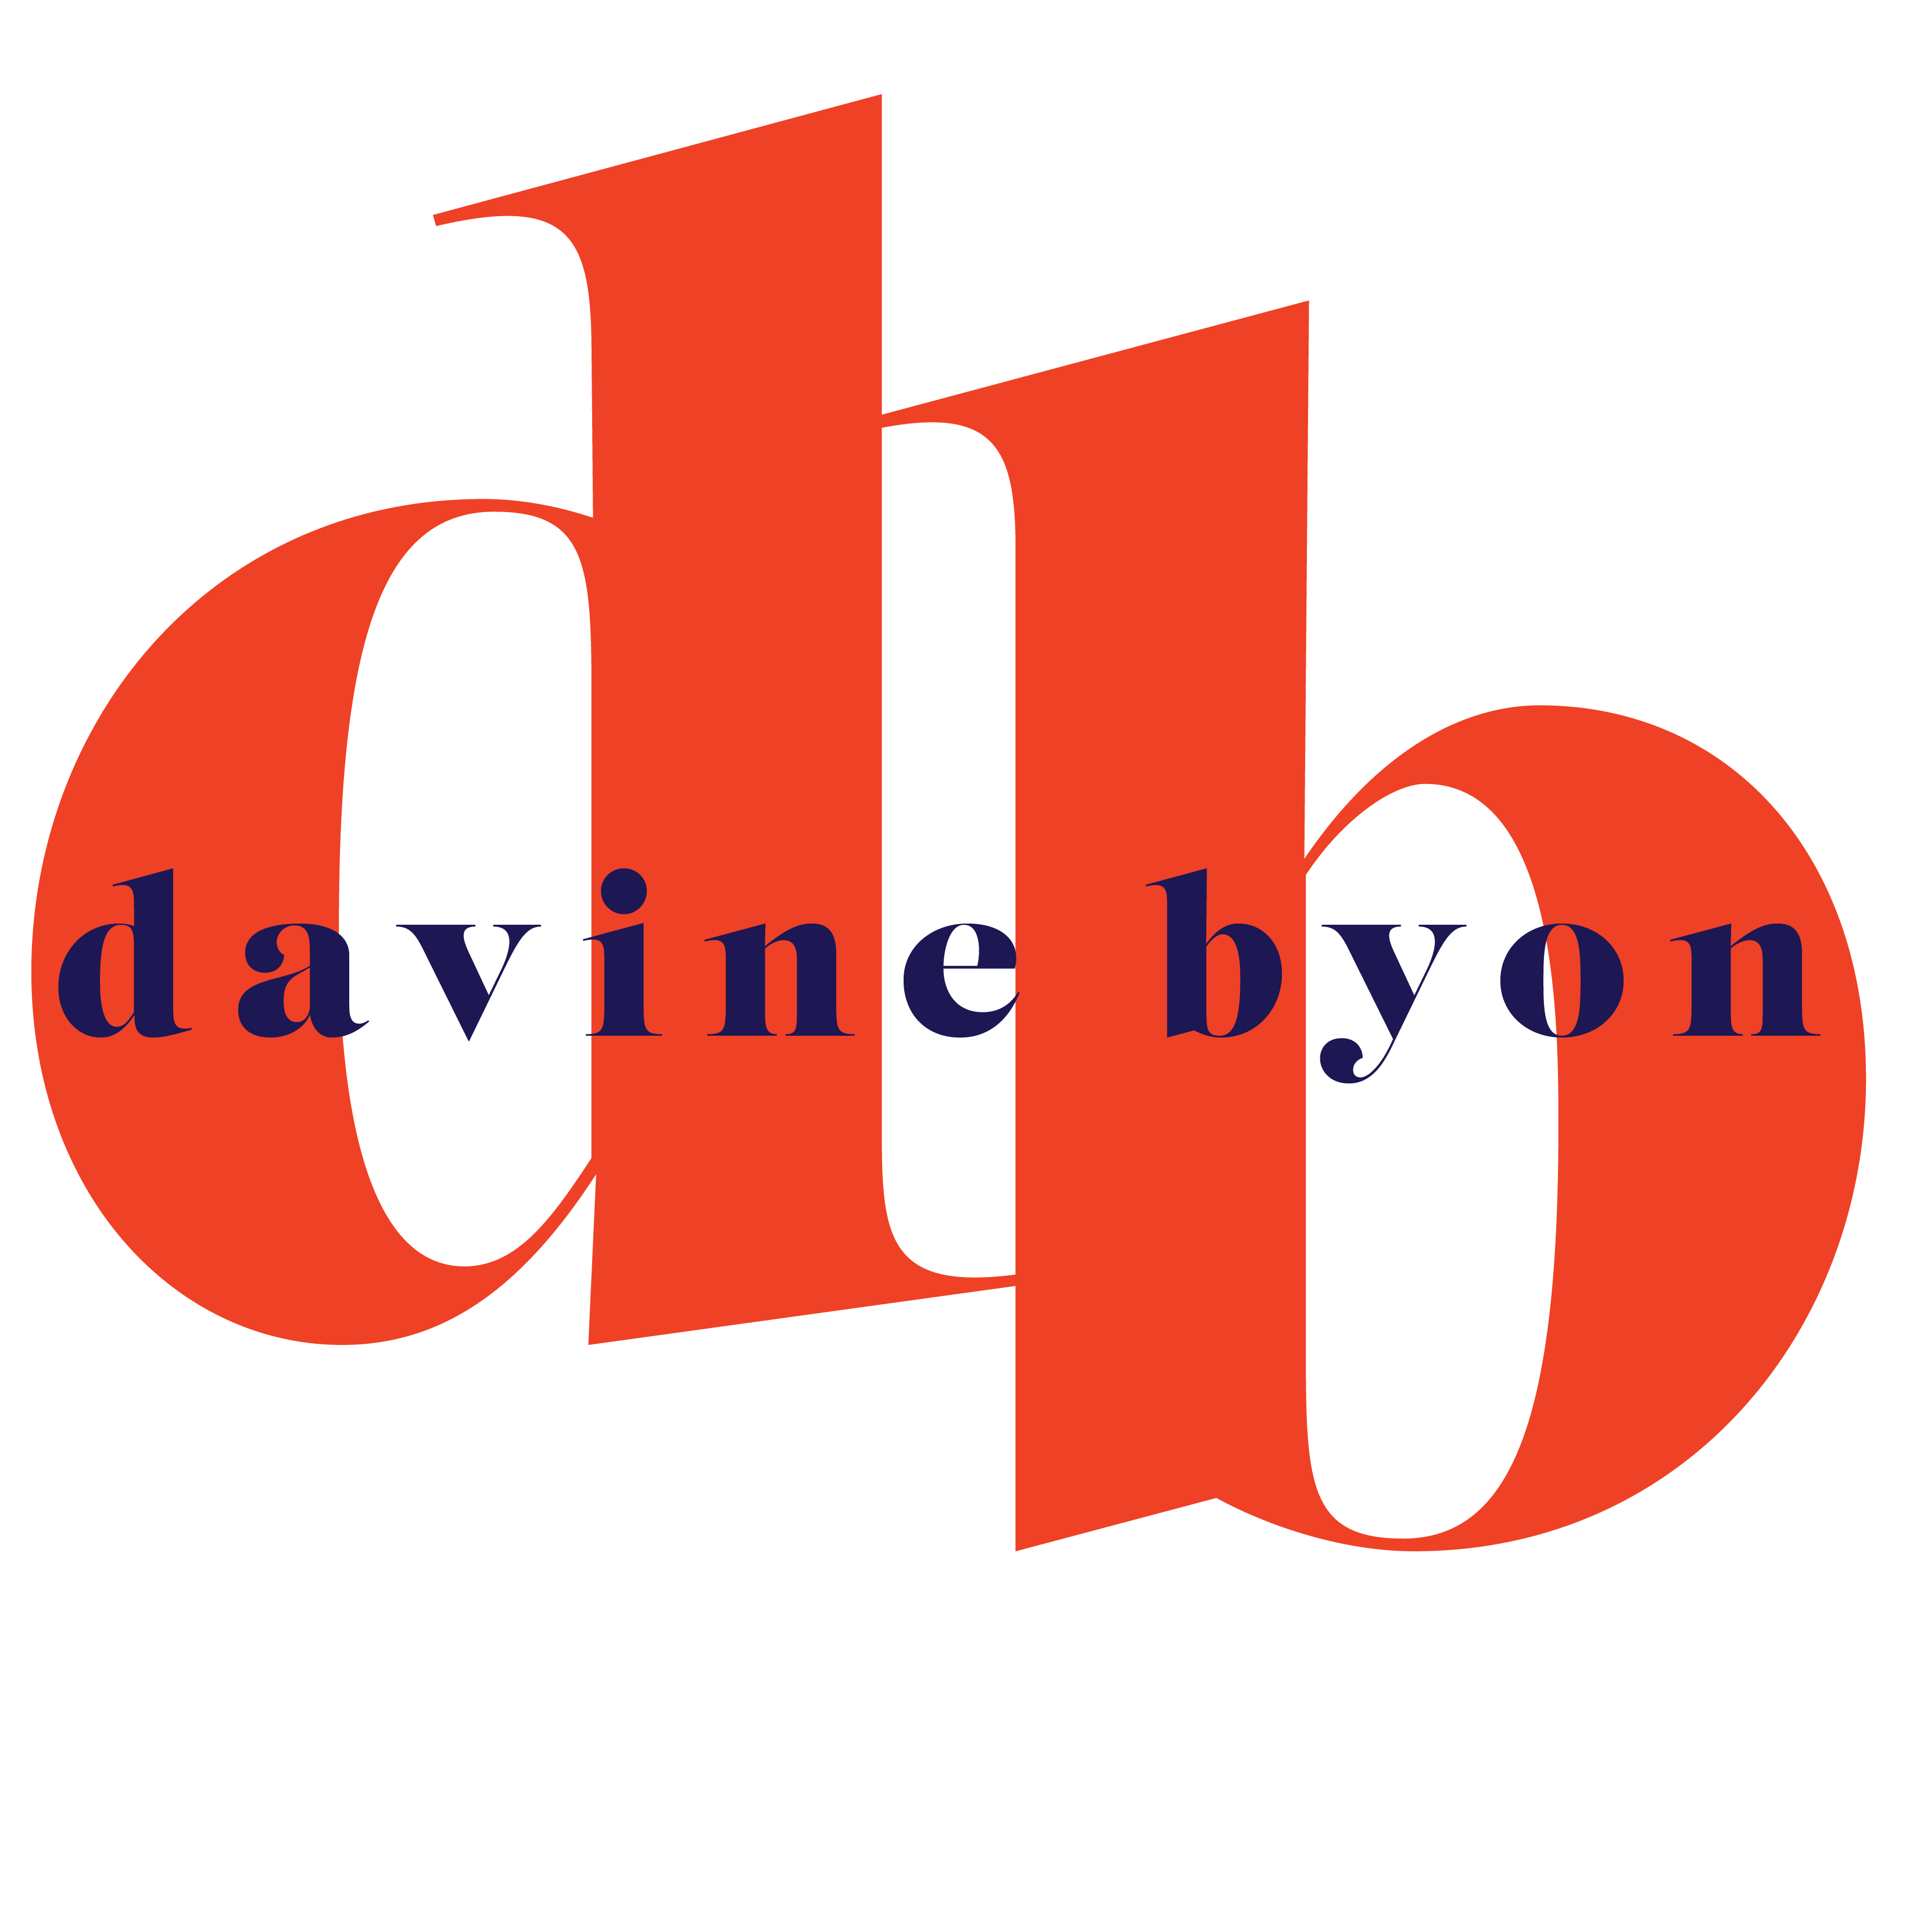 Davine Byon